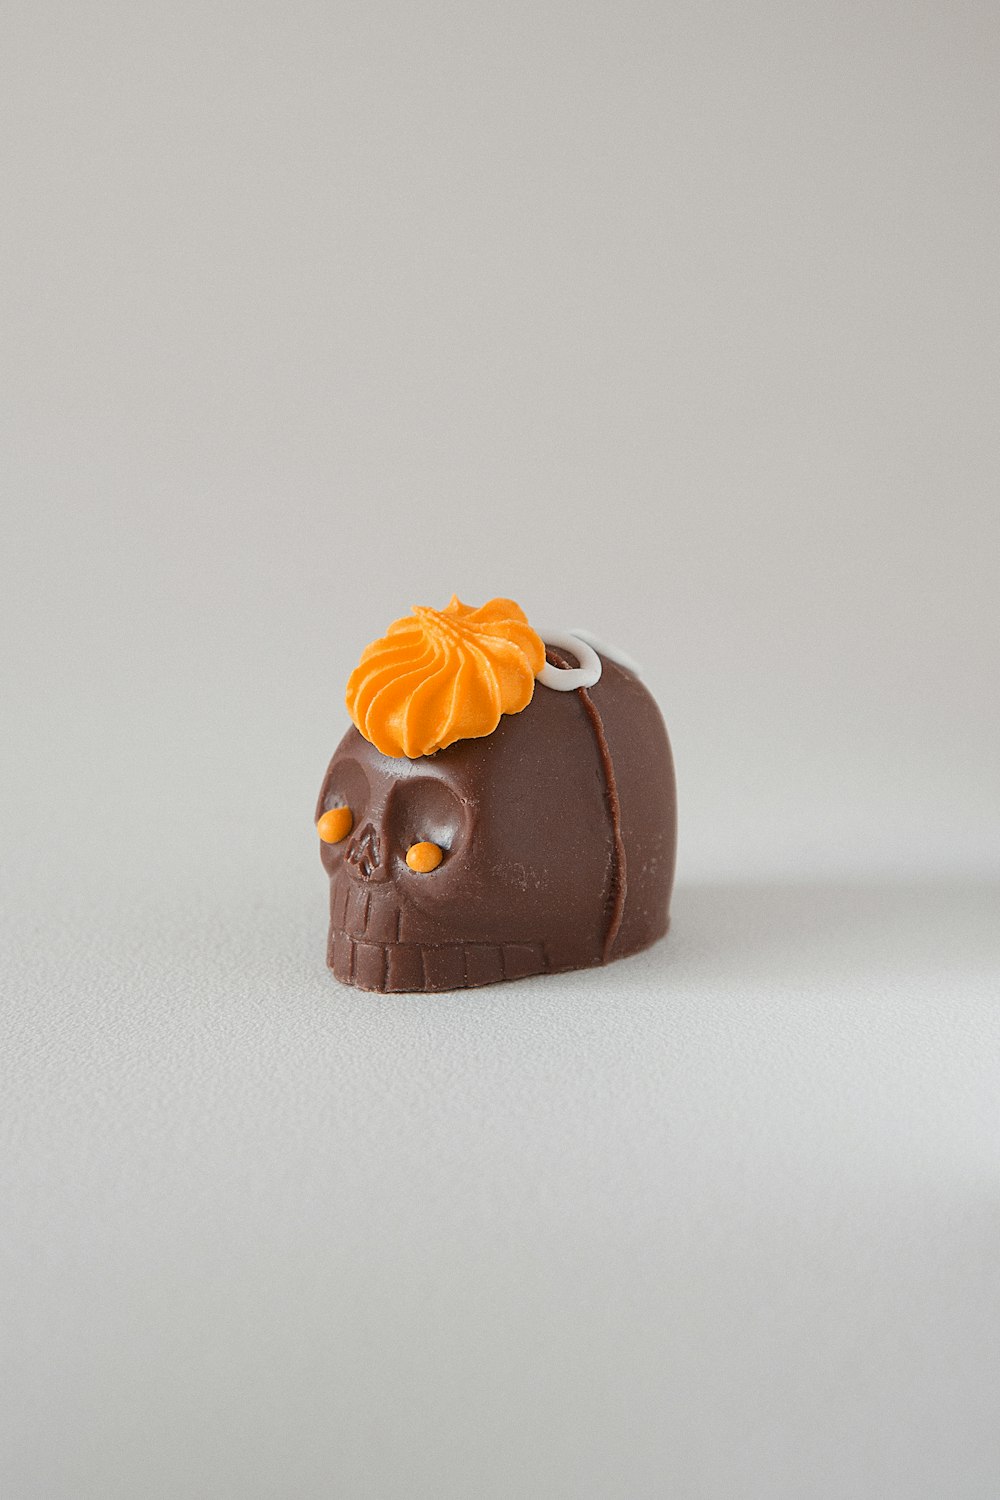 un teschio di cioccolato con un fiore d'arancio sulla testa